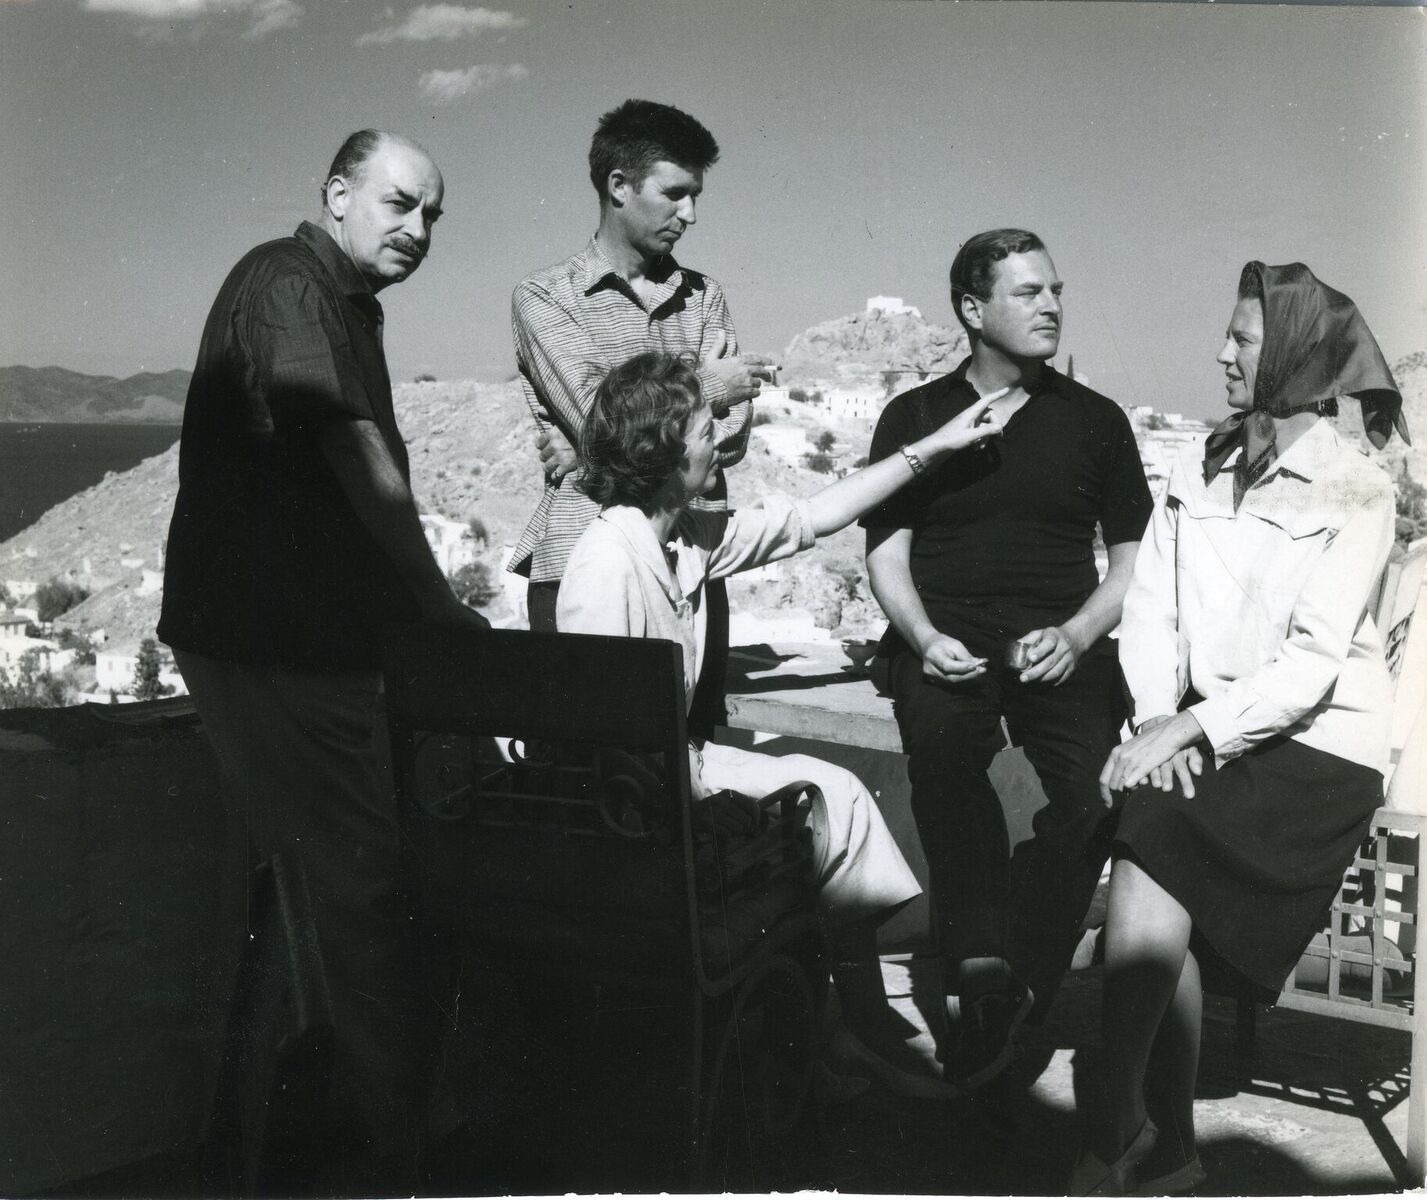 Ο Νίκος και η Μπάρμπαρα Γκίκα (αριστερά), με τον Τζον Κράξτον, τον Πάτρικ και την Τζόαν Λι Φέρμορ στο σπίτι τους στην Ύδρα, το 1958 |Μουσείο Μπενάκη/Roloff Beny